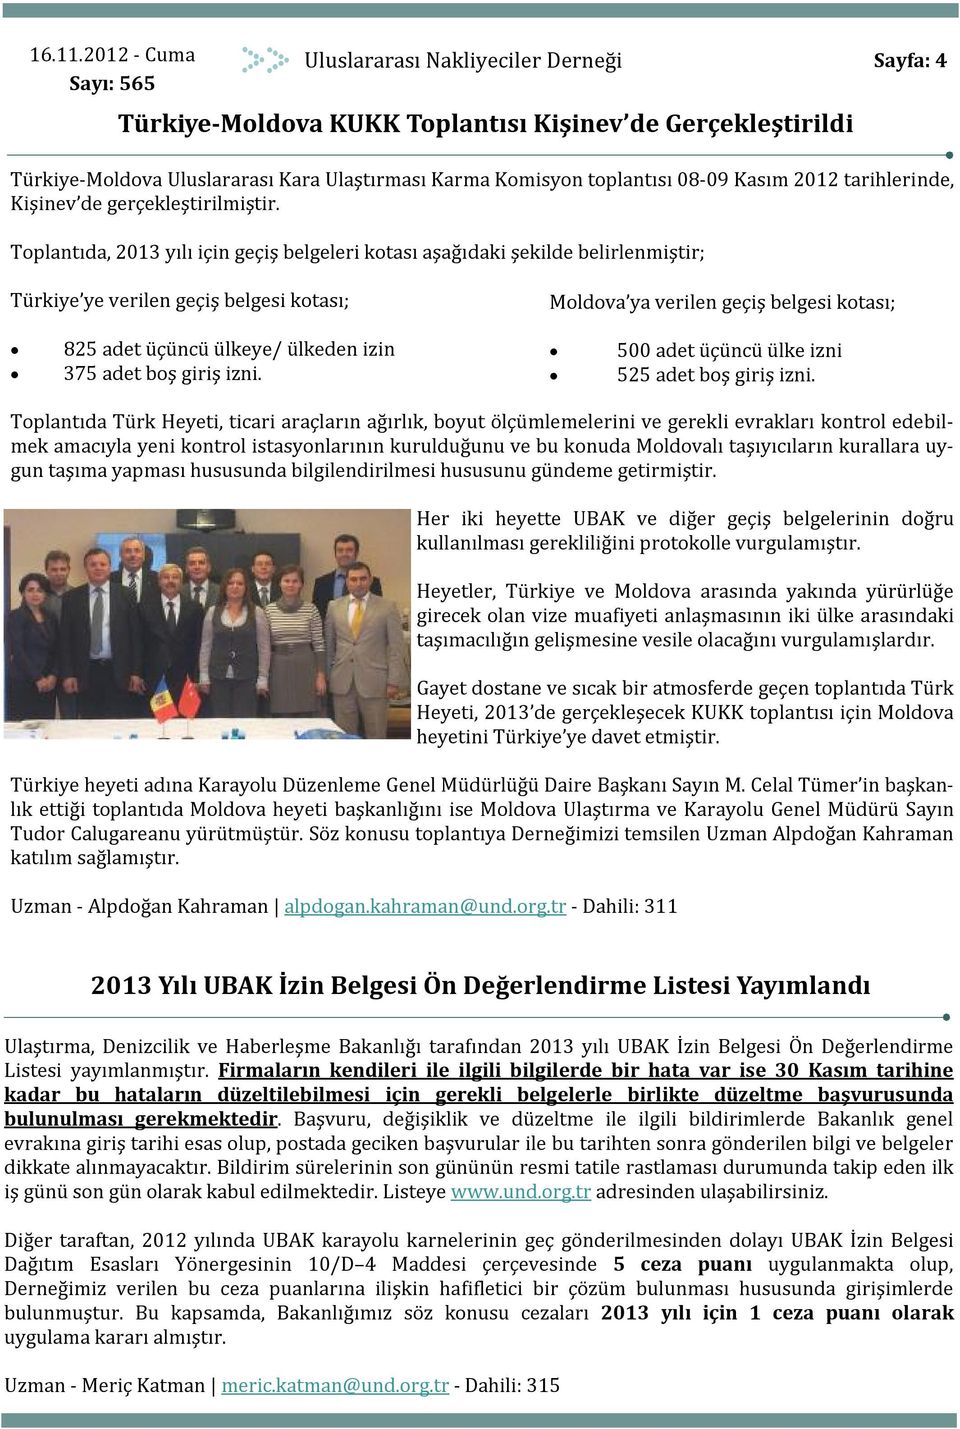 Toplantıda, 2013 yılı için geçiş belgeleri kotası aşağıdaki şekilde belirlenmiştir; Türkiye ye verilen geçiş belgesi kotası; Moldova ya verilen geçiş belgesi kotası; 825 adet üçüncü ülkeye/ ülkeden